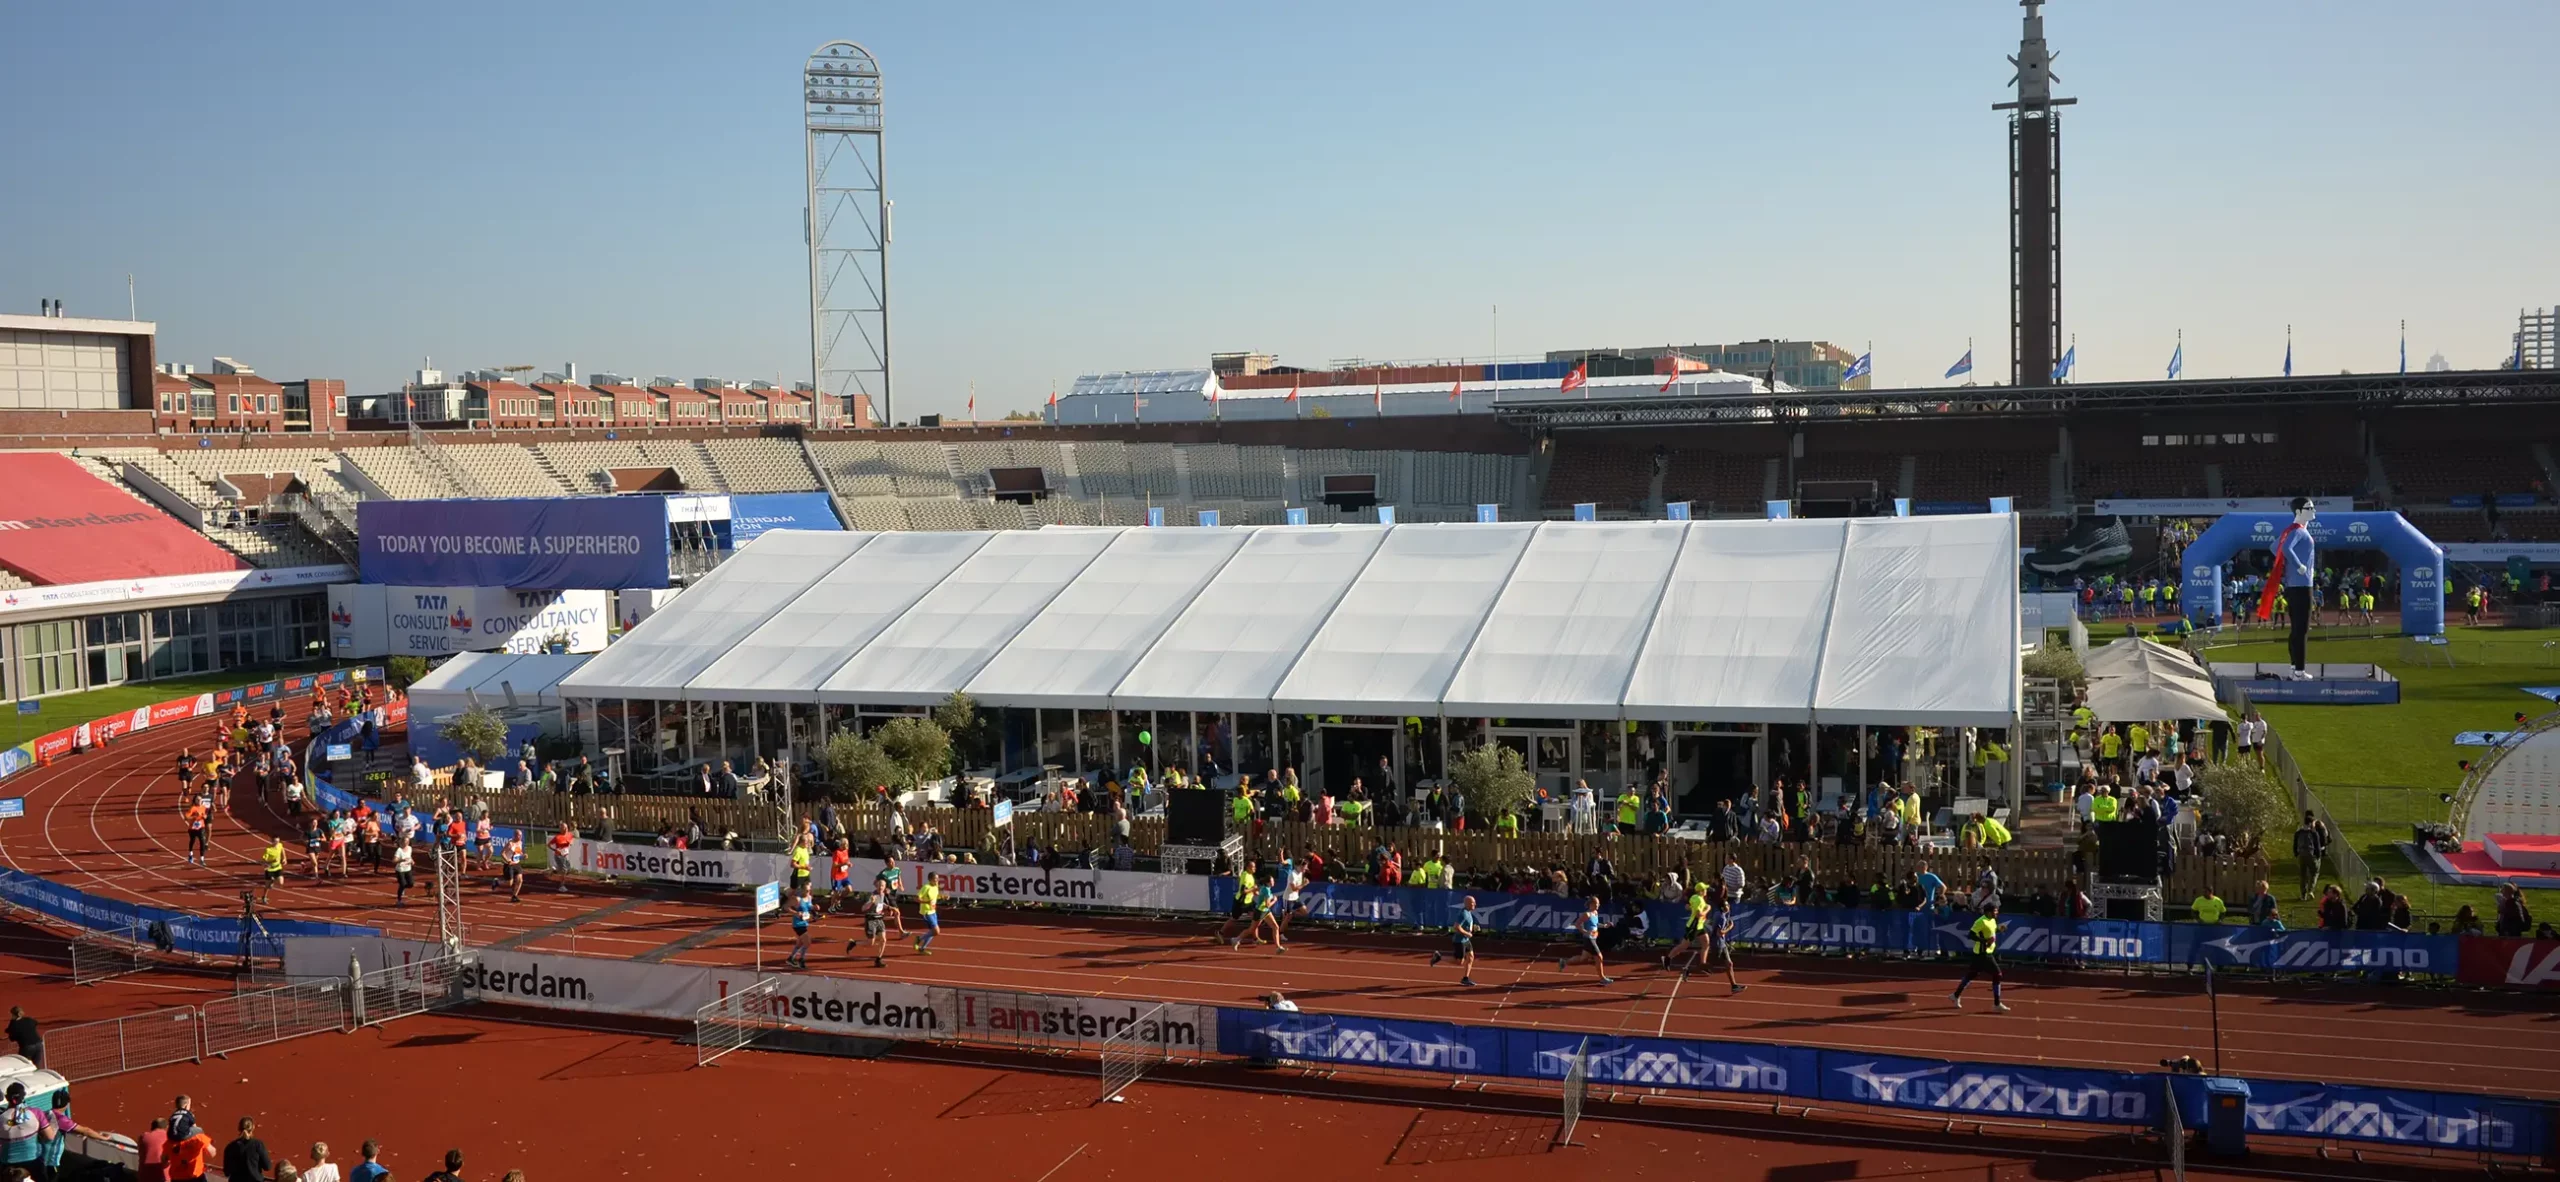 Zieleinlauf im Stadion an der Zelthalle Alu Pavillon - großes Marathon Sportevent mit Zuschauerzelt